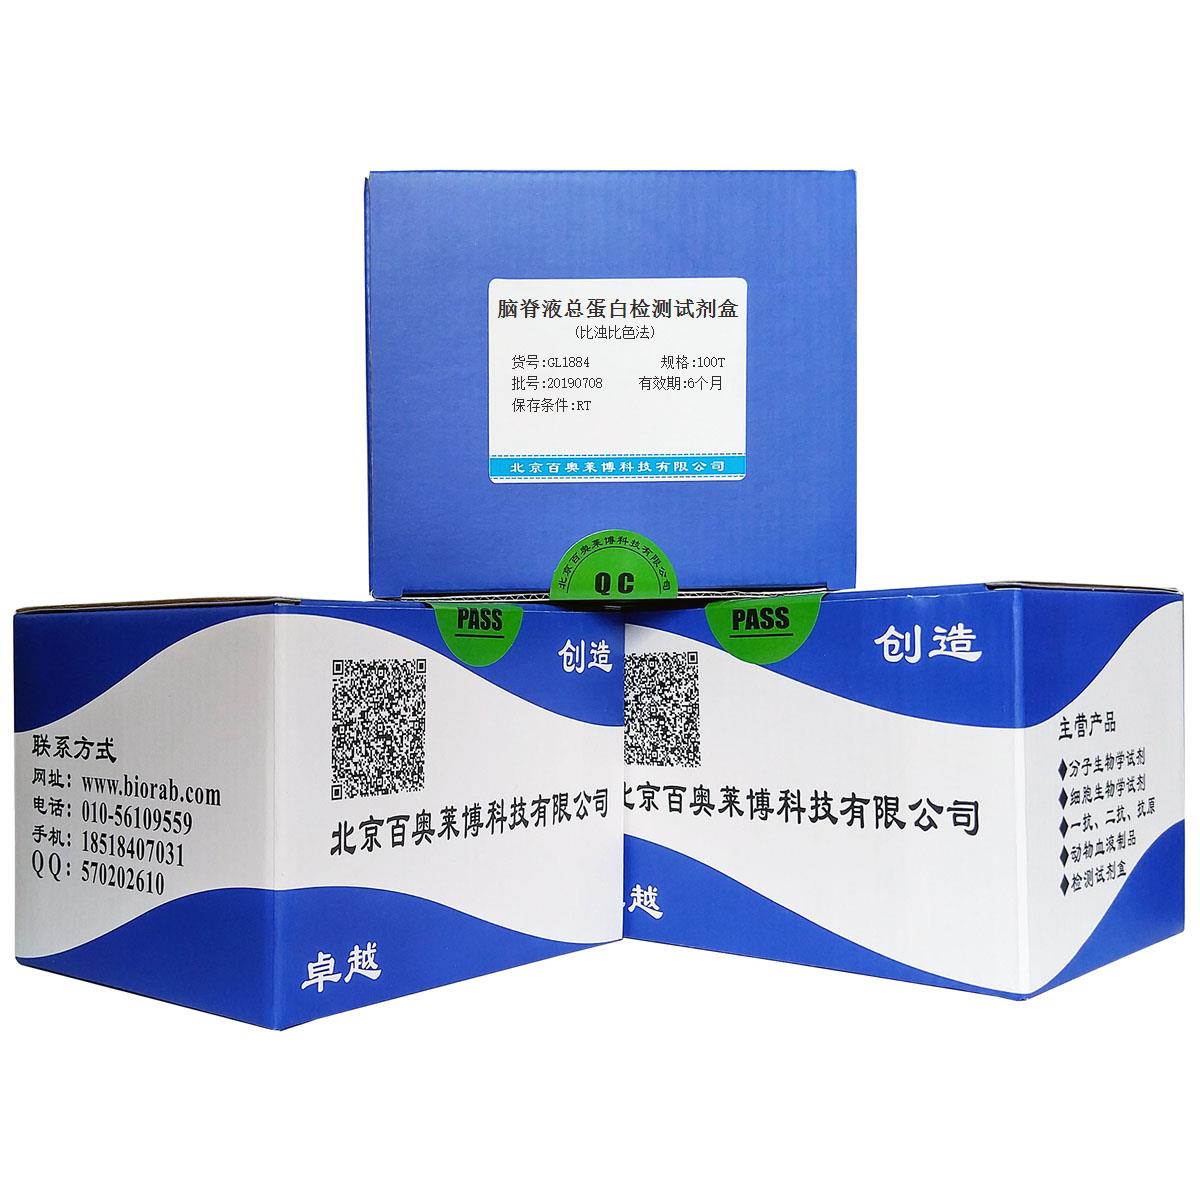 脑脊液总蛋白检测试剂盒(比浊比色法)北京品牌